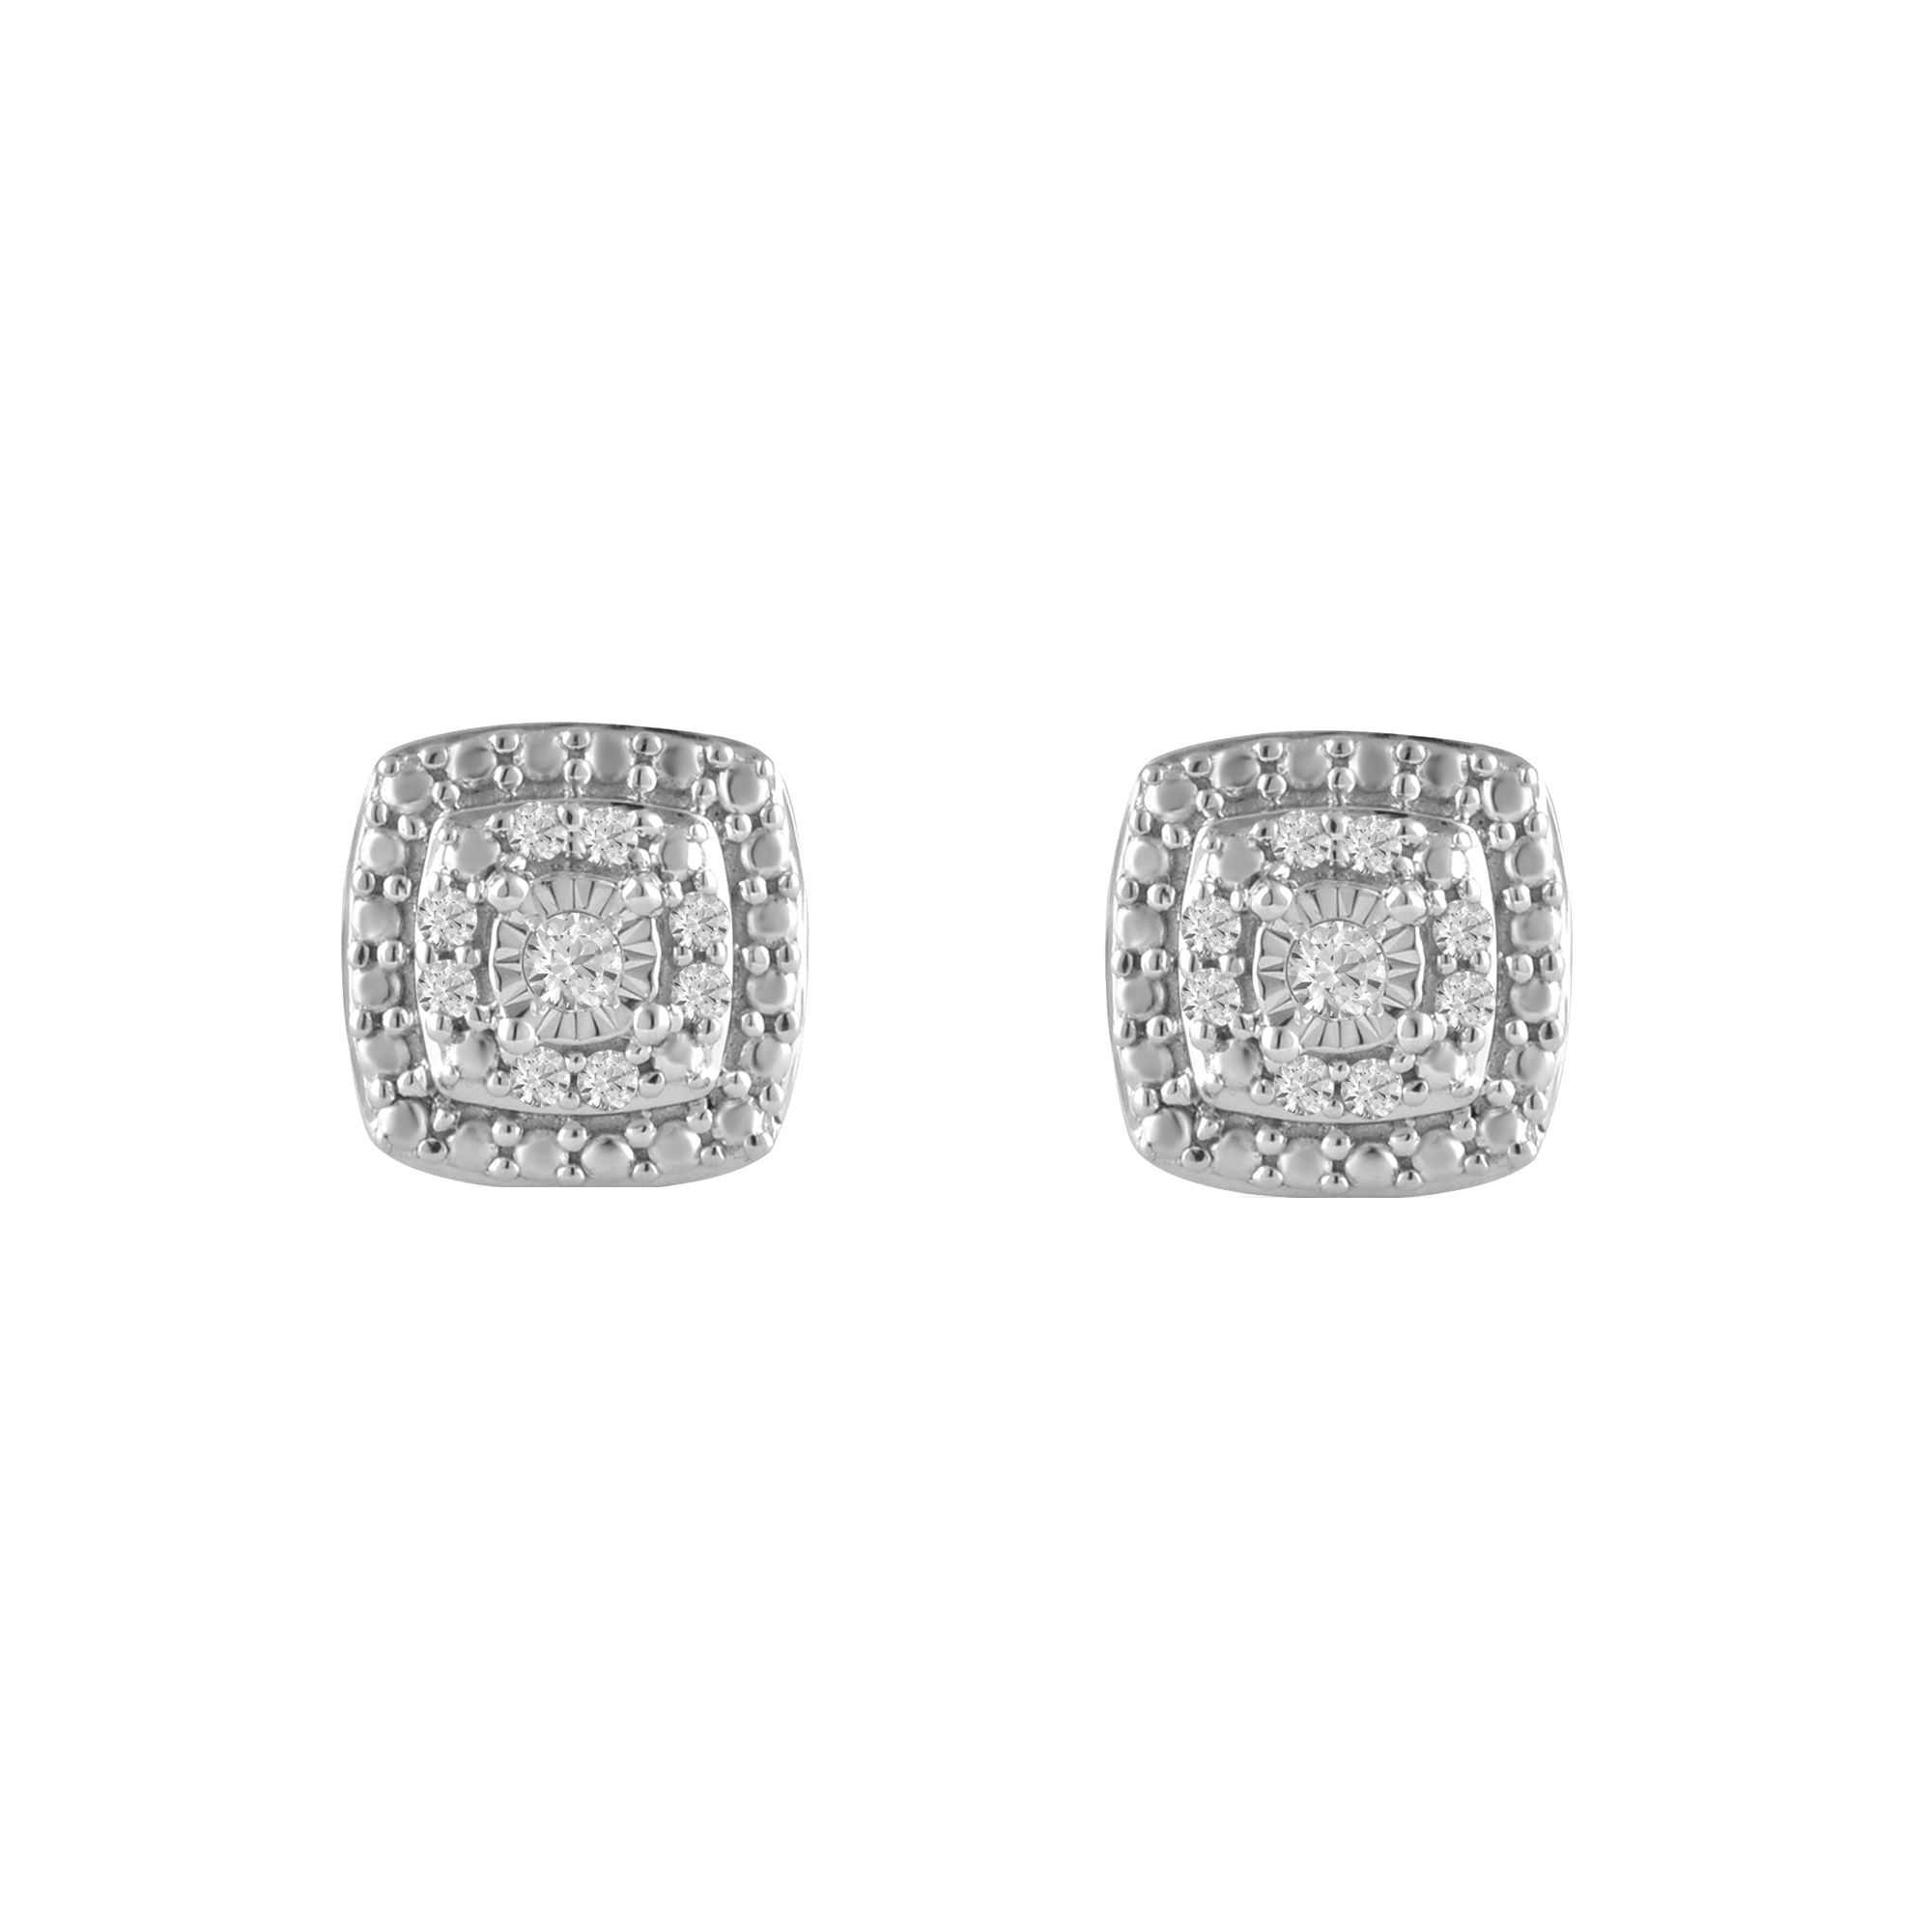 10 Ct T W Diamond Stud Earrings In Sterling Silver Bjs